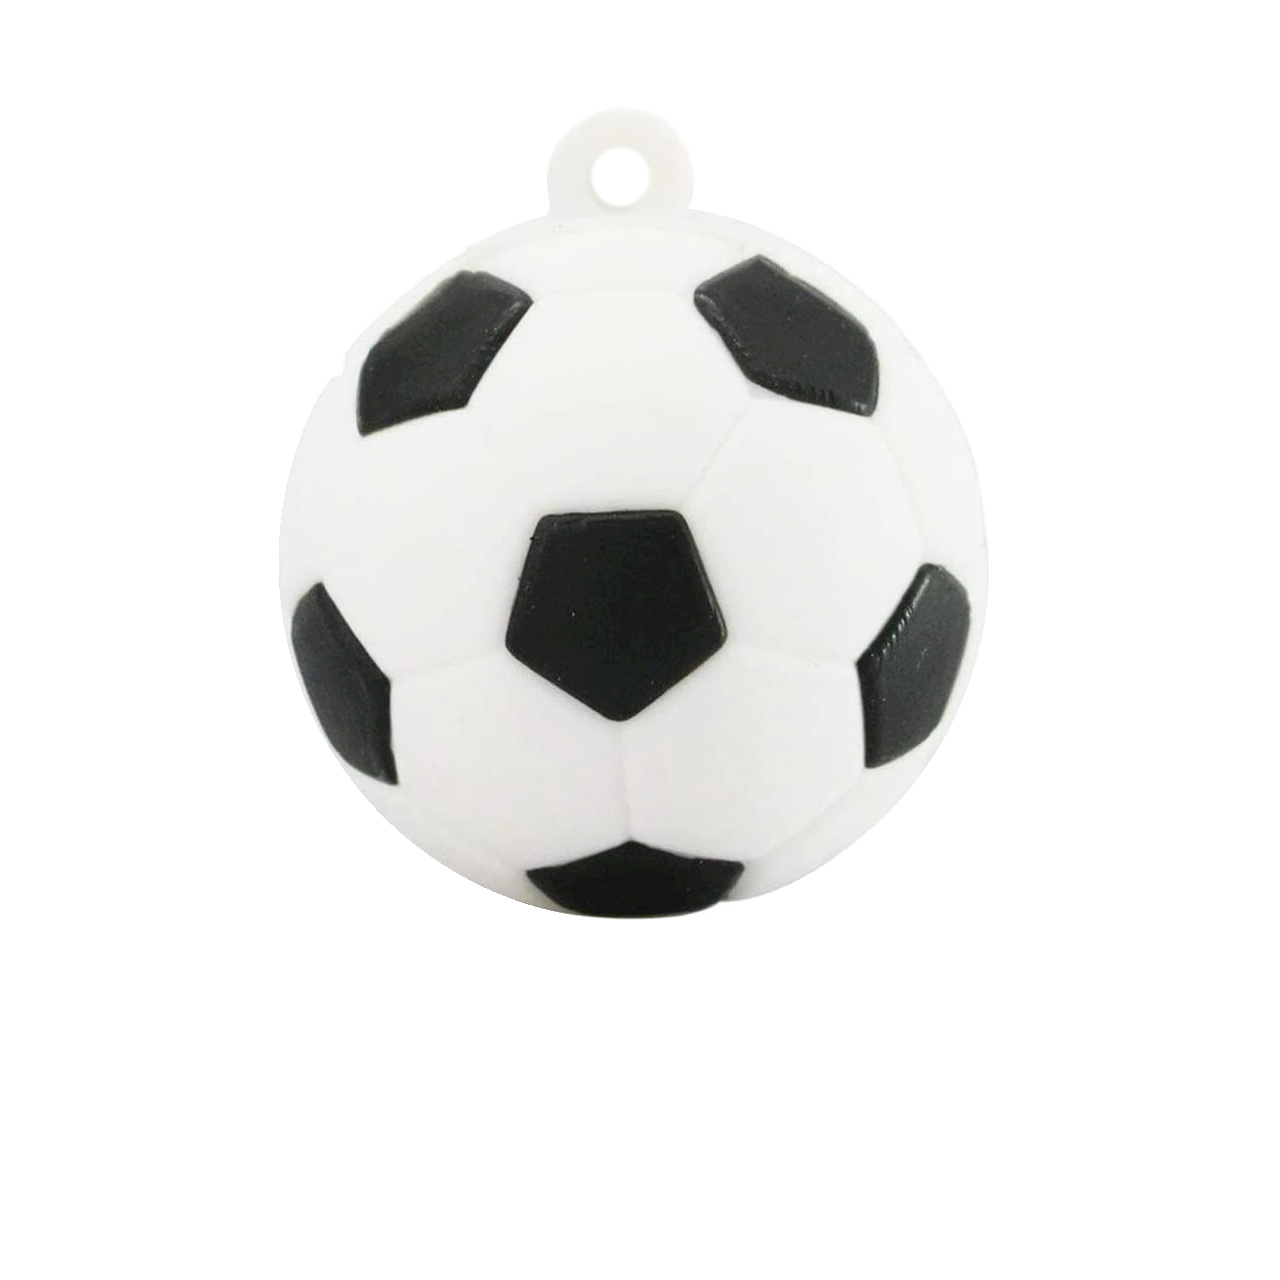 فلش مموری طرح Soccer ball مدل DPL1114-U3 ظرفیت 64 گیگابایت